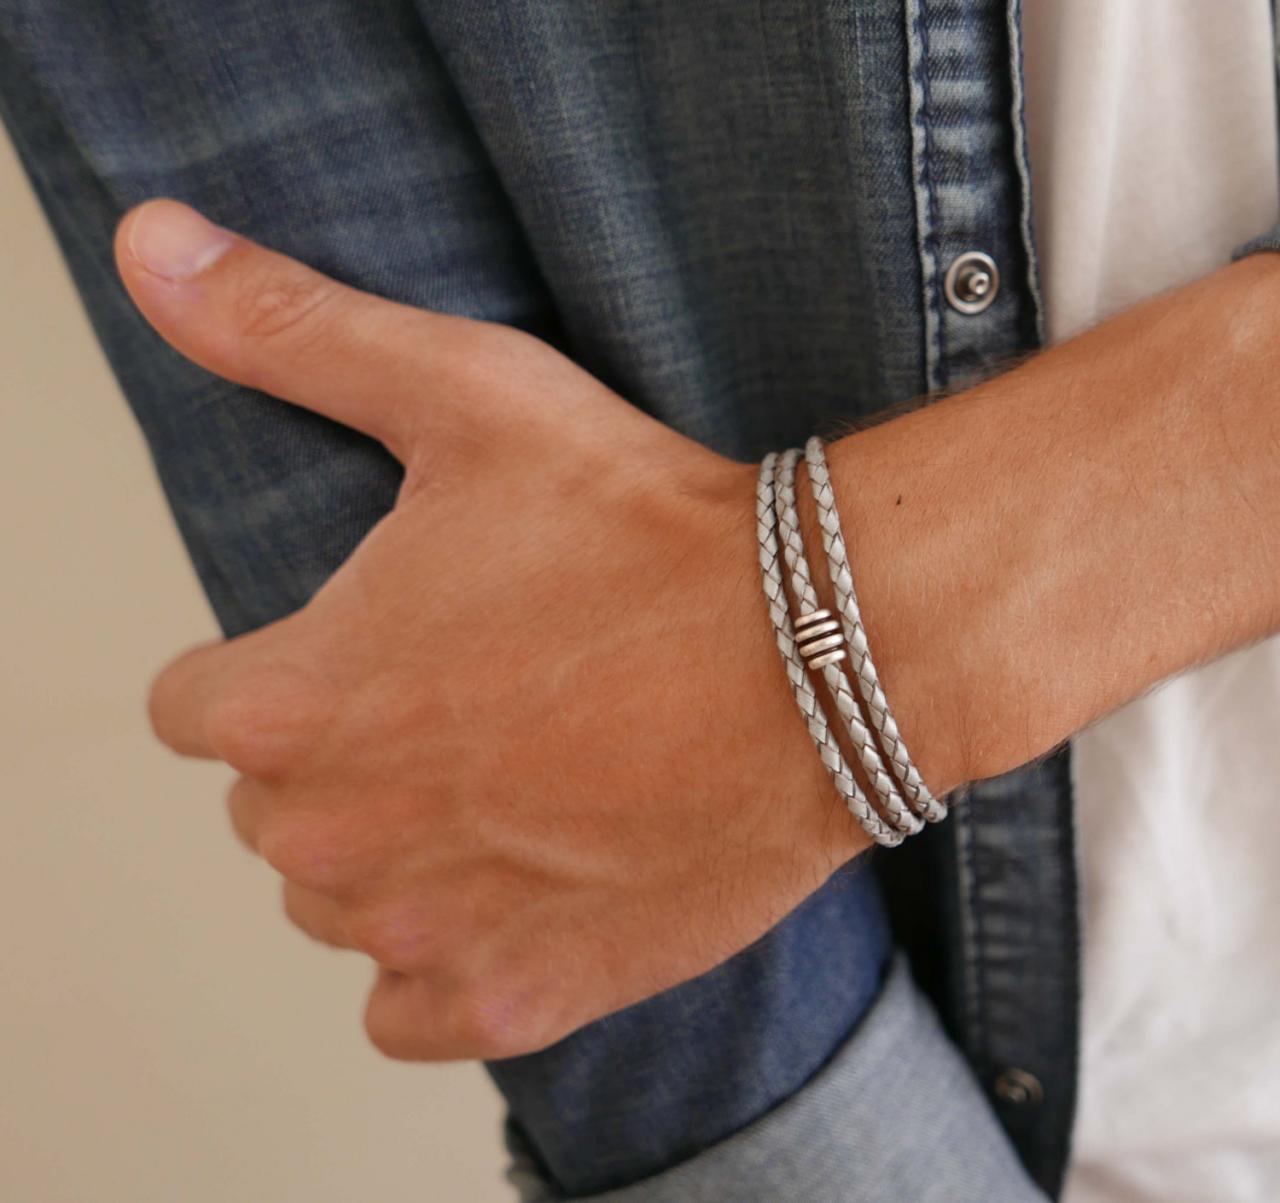 Men's Bracelet - Men's Beaded Bracelet - Men's Leather Bracelet - Men's Jewelry - Men's Gift -